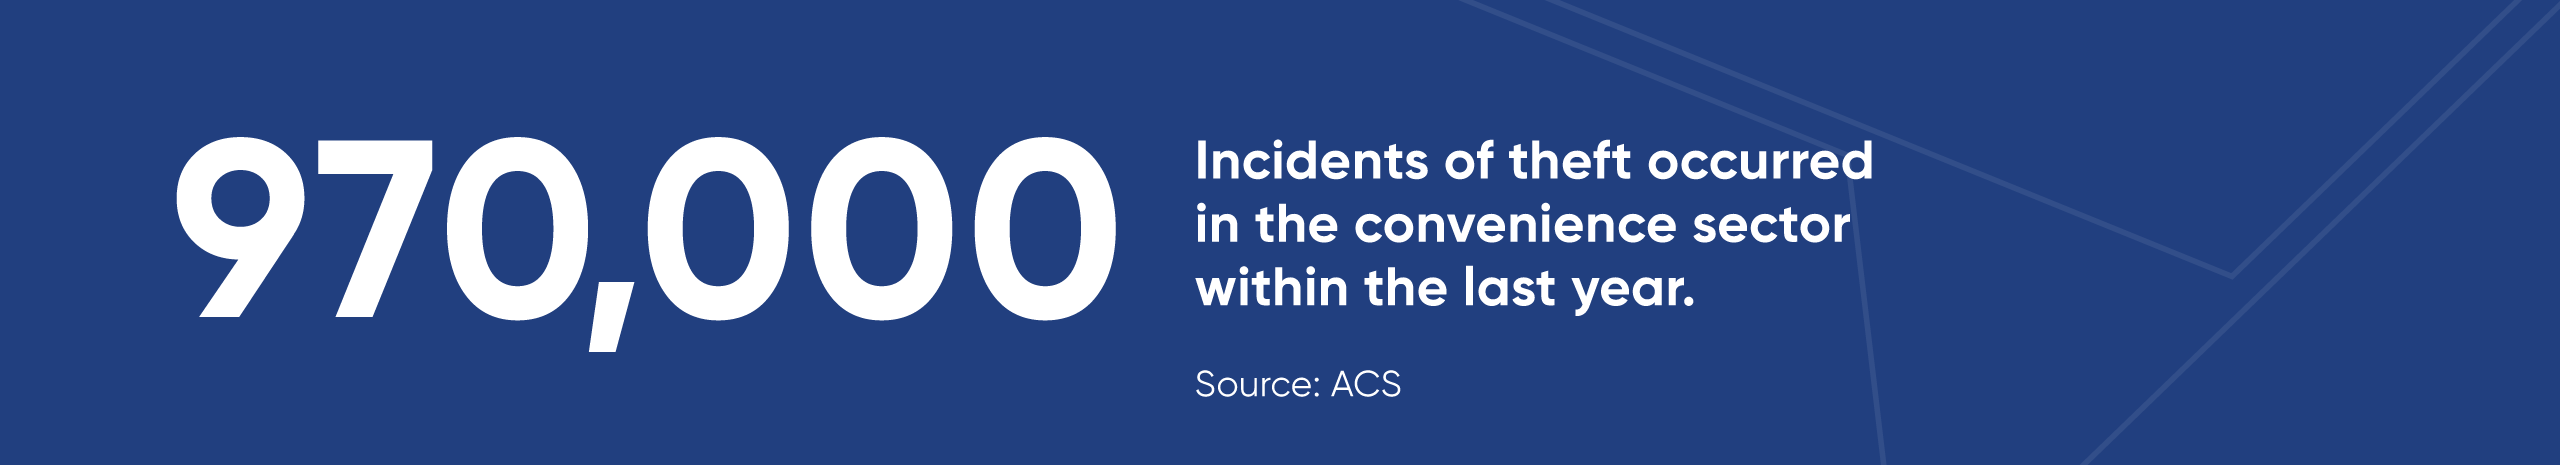 acs-incidents-report